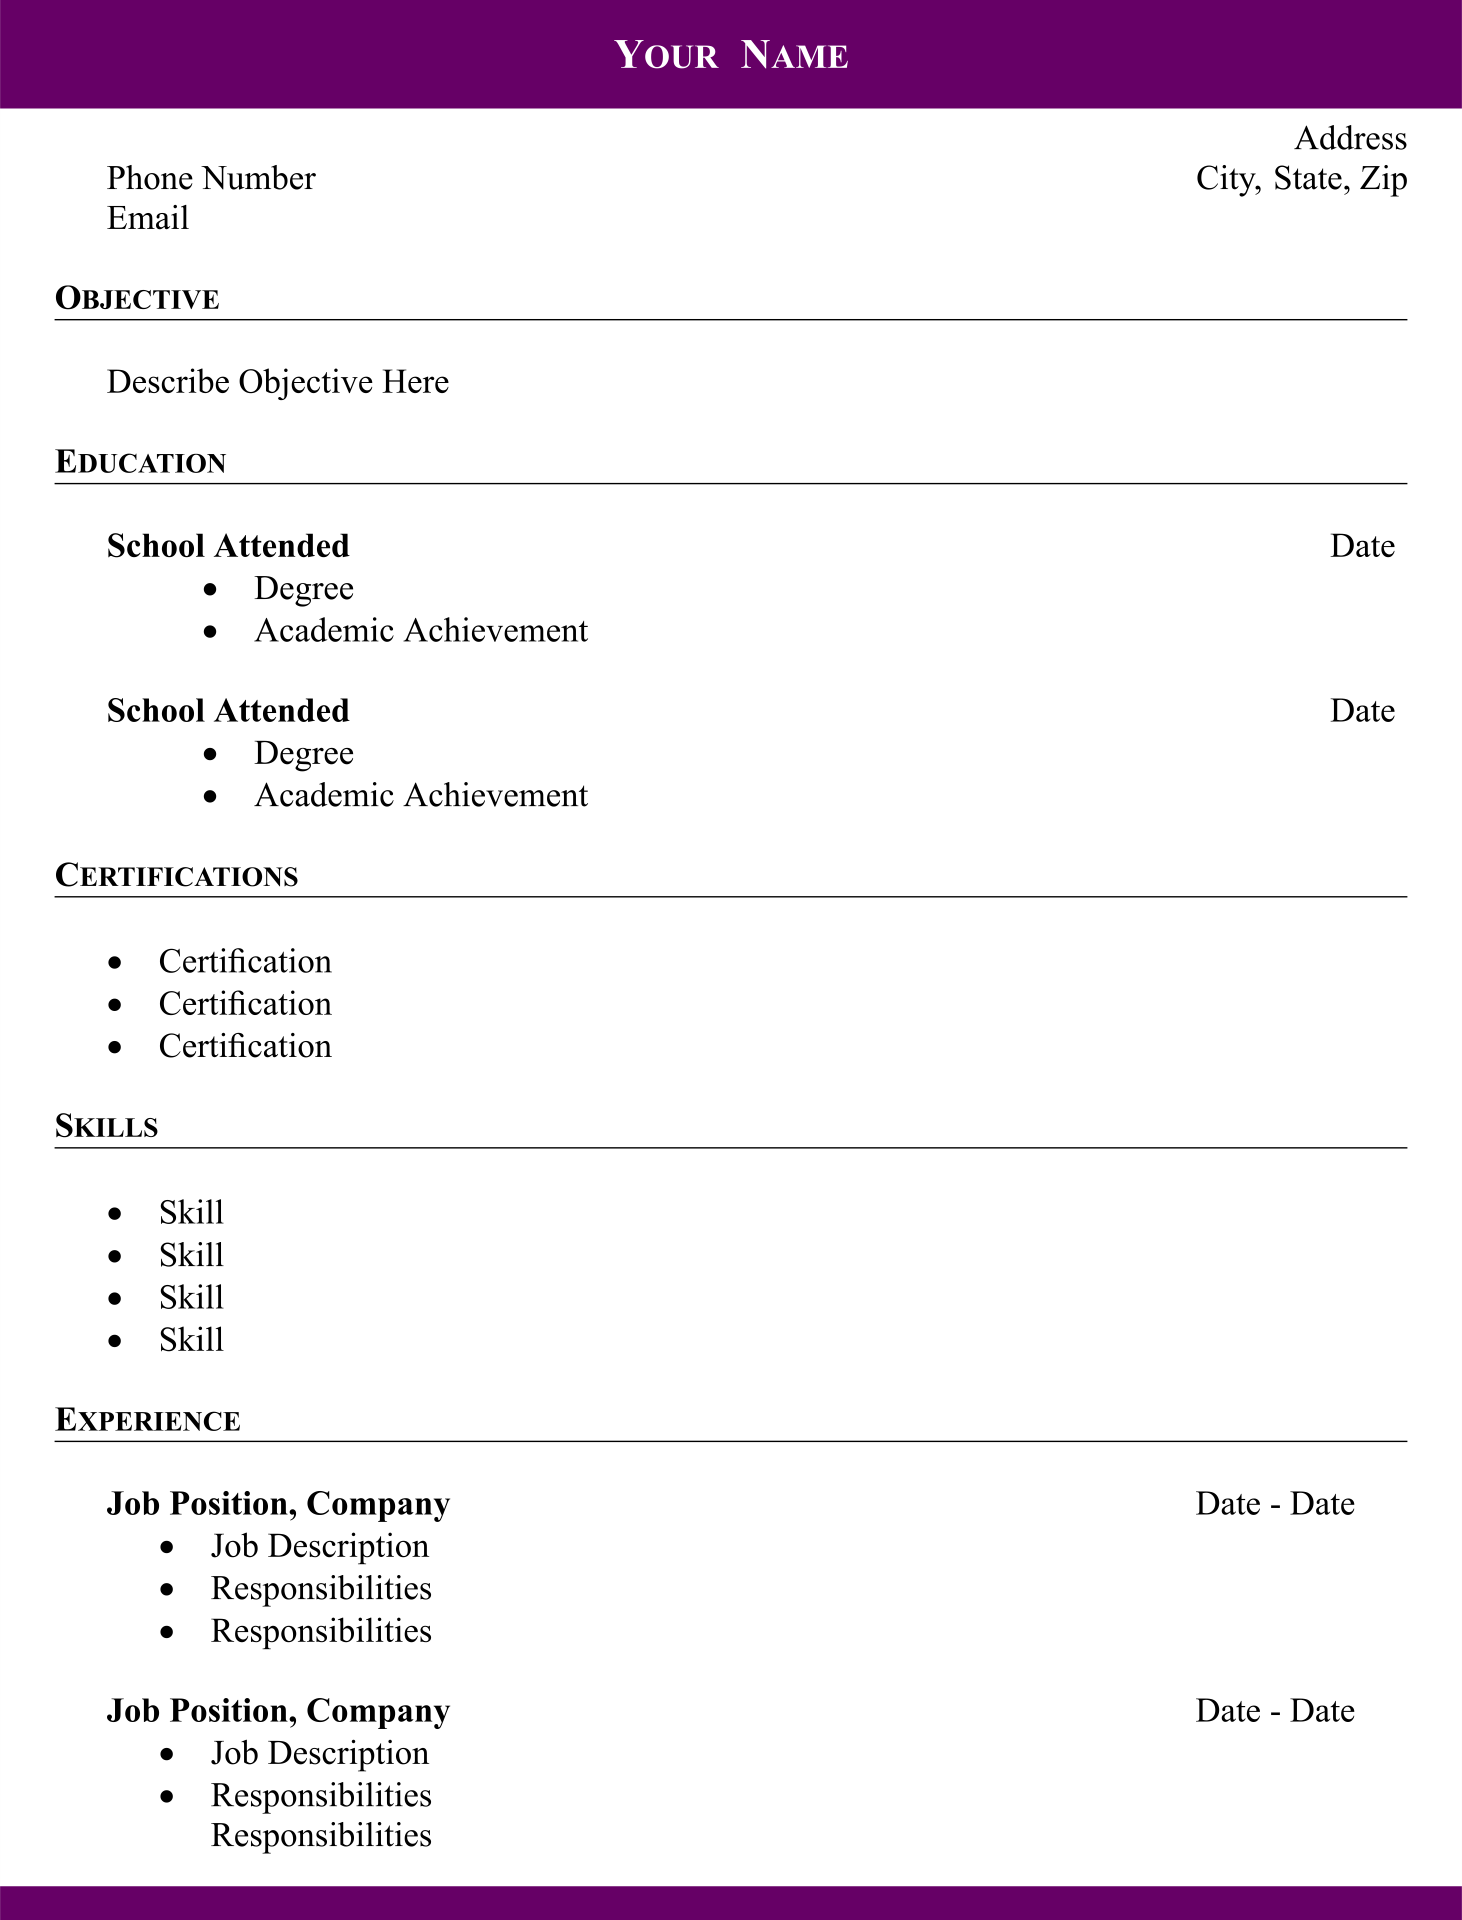 resume templates pdf free download